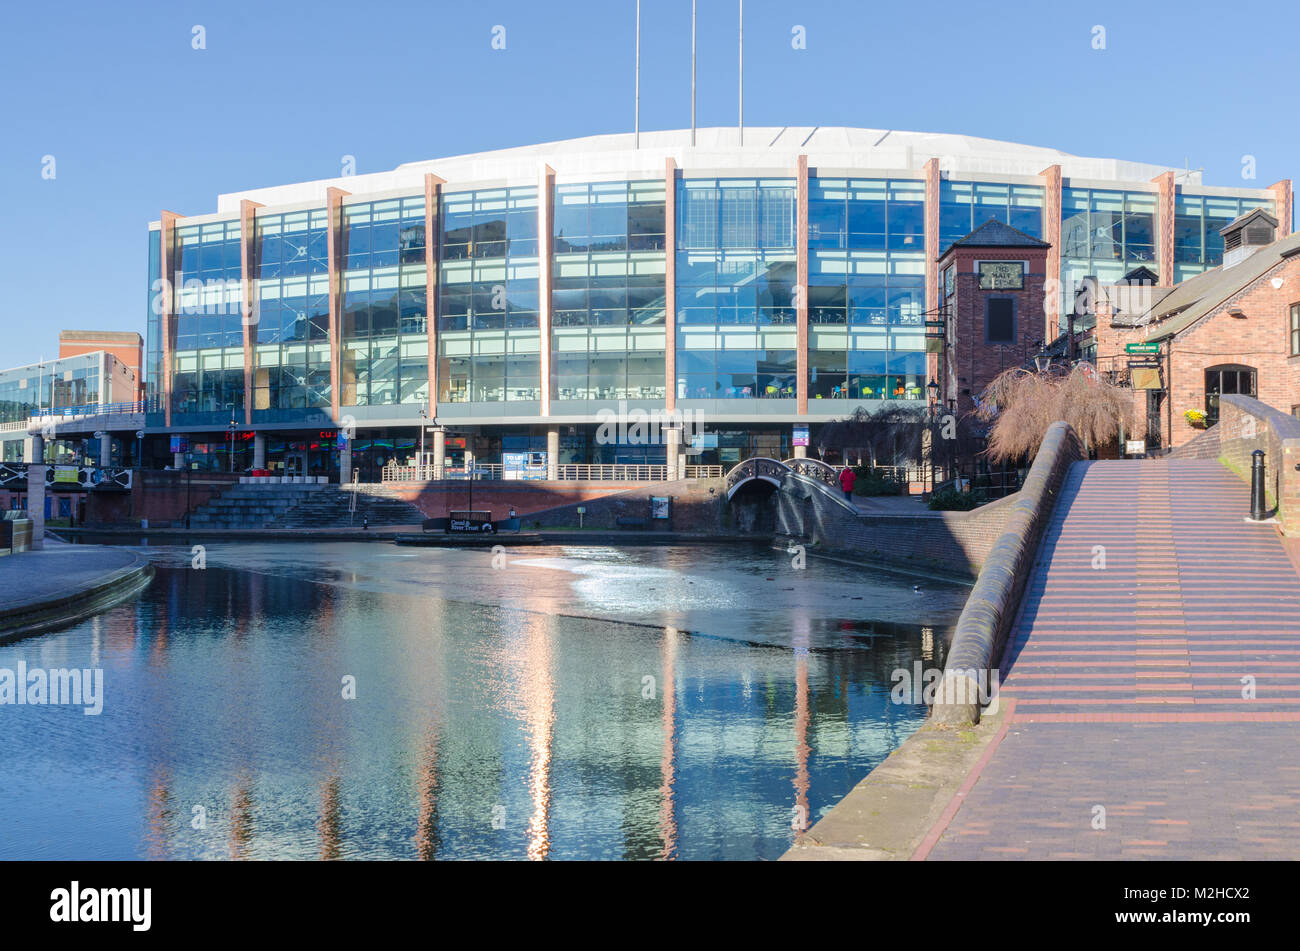 La nouvelle arène Arena Birmingham Birmingham ou lieu de divertissement en direct que l'on appelait auparavant le Barclaycard Arena et NIA vue du canal. Banque D'Images